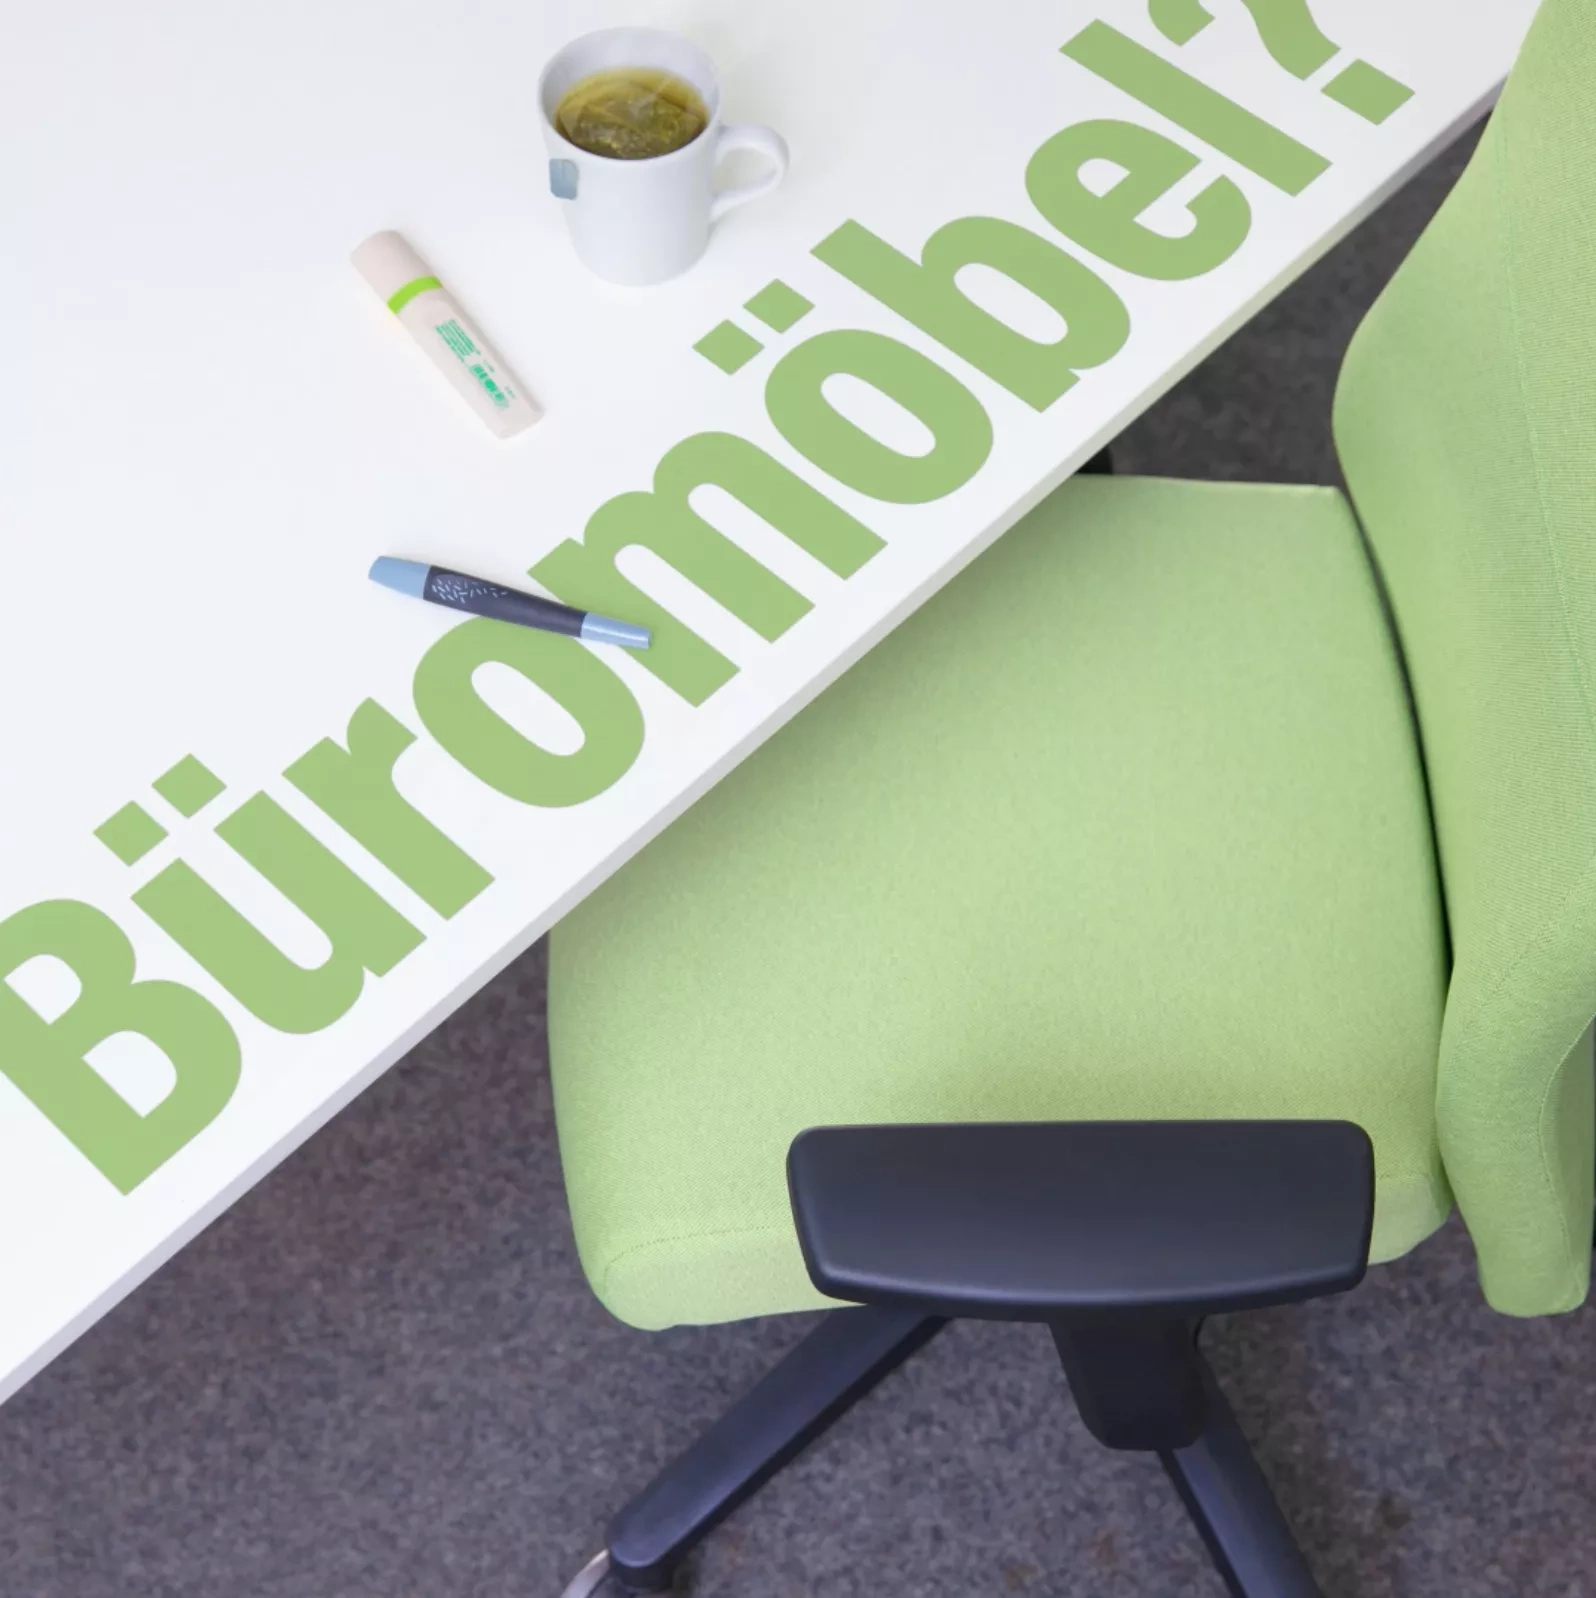 Büromöbel? - umweltschonend! Ein hellgrüner Bürostuhl steht an eine weißen Schreibtisch auf dem zwei Stifte liegen und eine Tasse Tee steht.